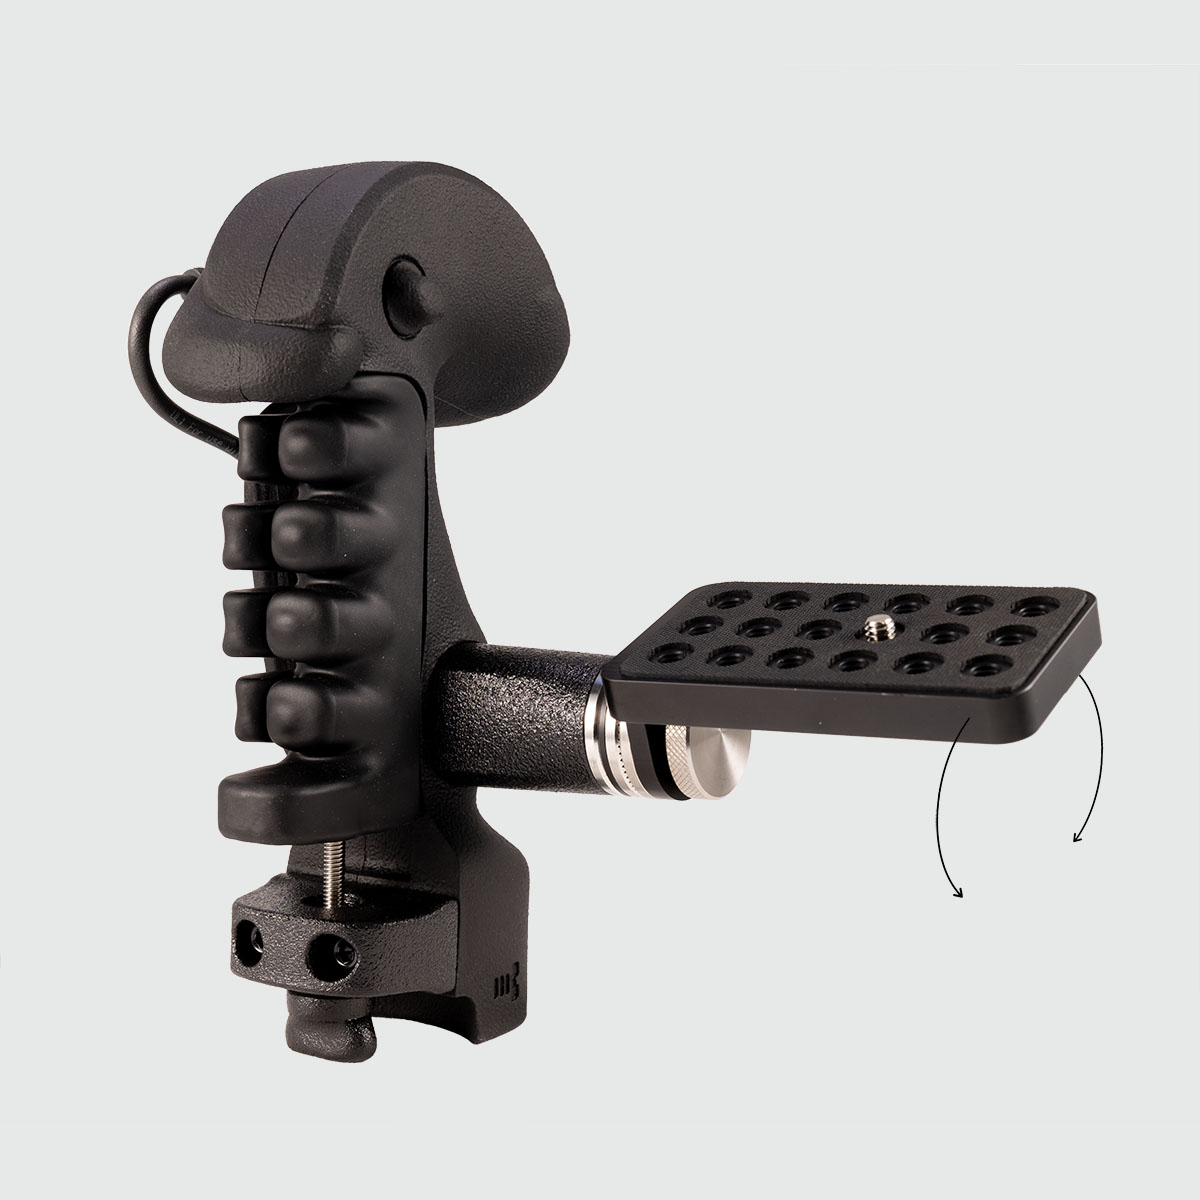 Illustration du système de friction Caman avec le plateau de montage caméra de la S GRIP PRO